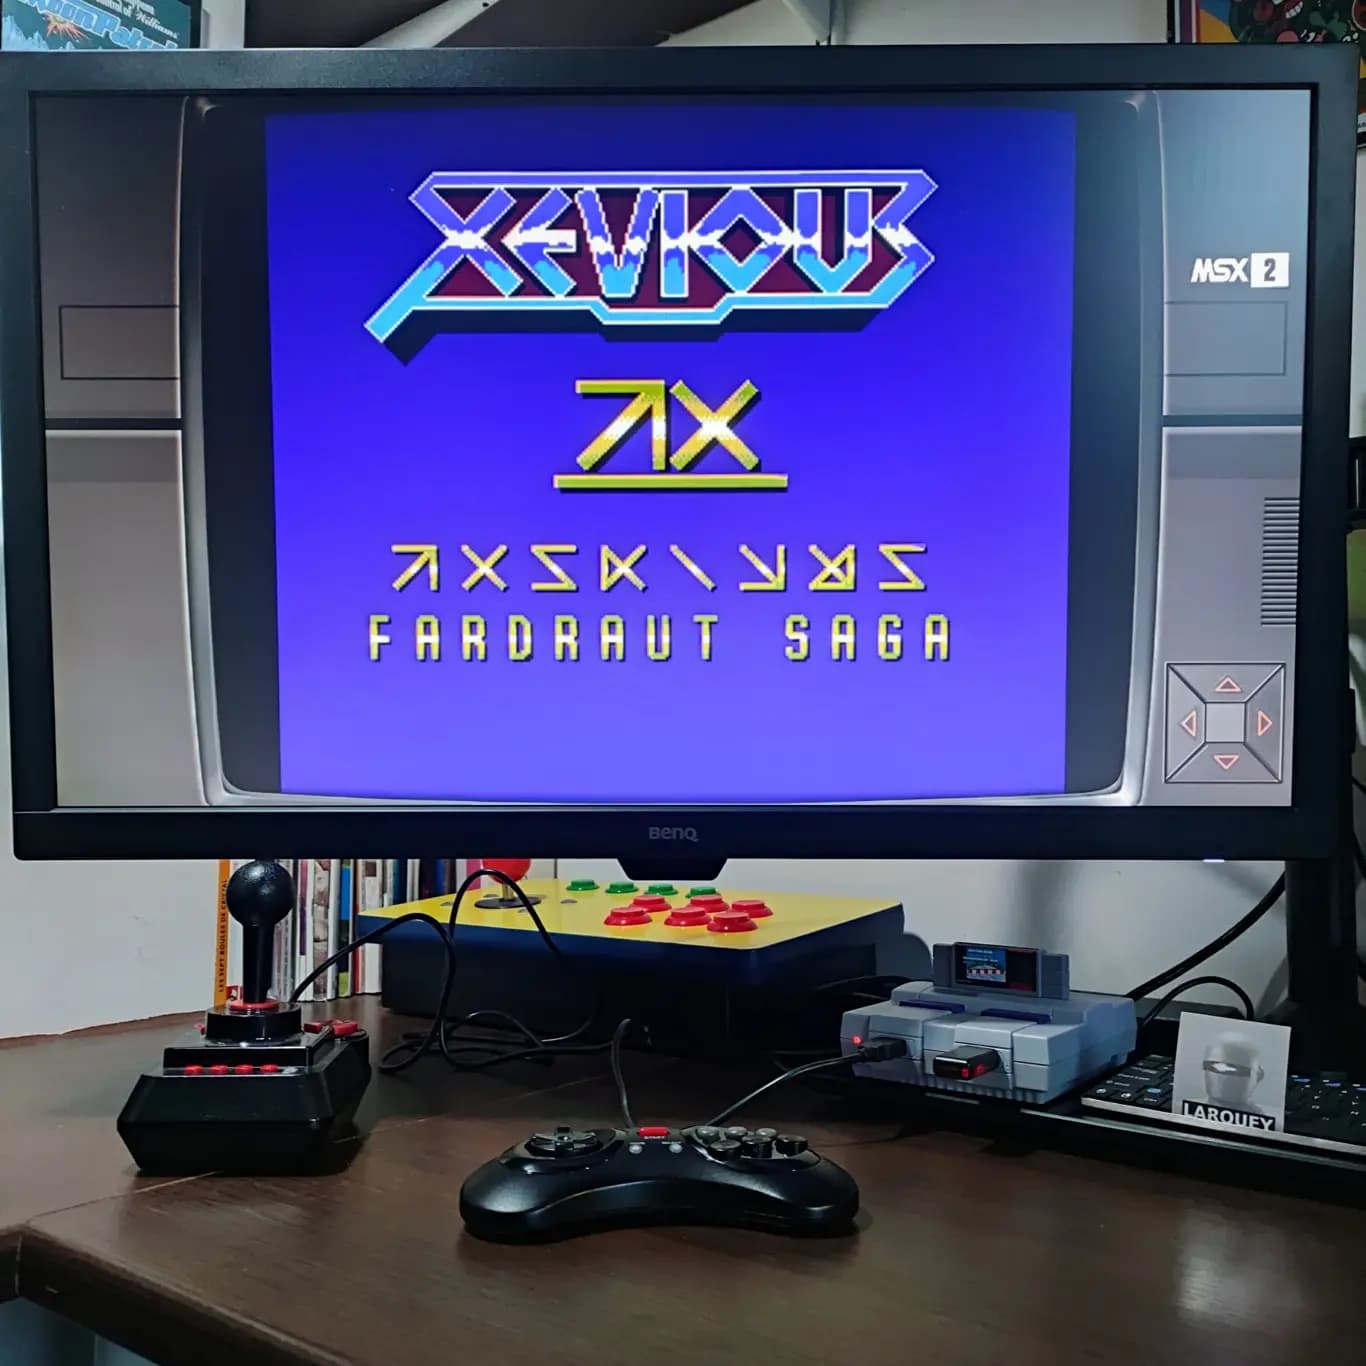 Larquey: Xevious Fardraut Saga [Mission Scramble] (MSX Emulated) 24,990 points on 2022-08-21 04:31:50